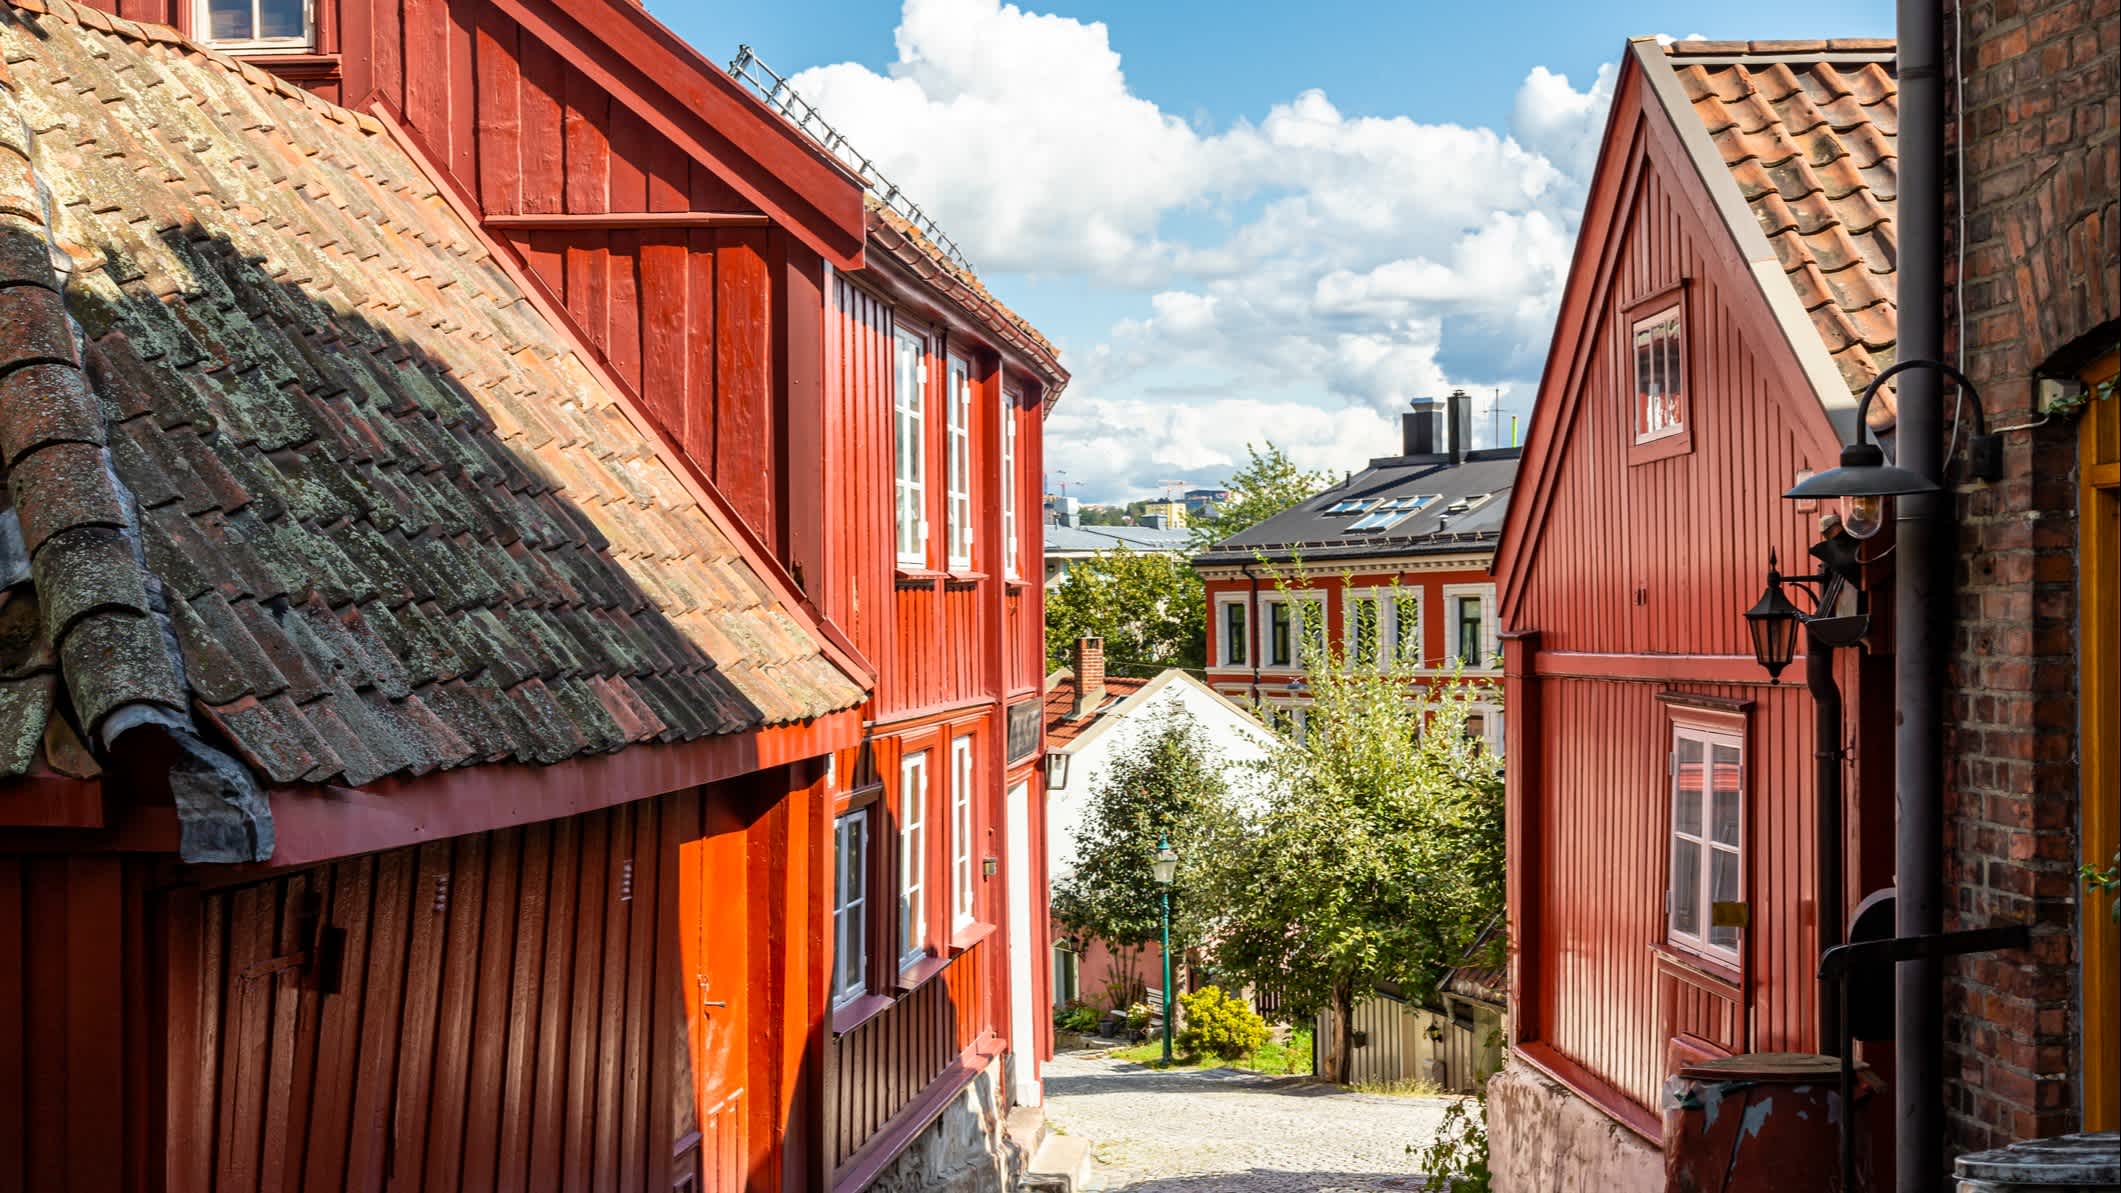 Traditionelle Häuser auf Damstredet, Oslo, Norwegen.